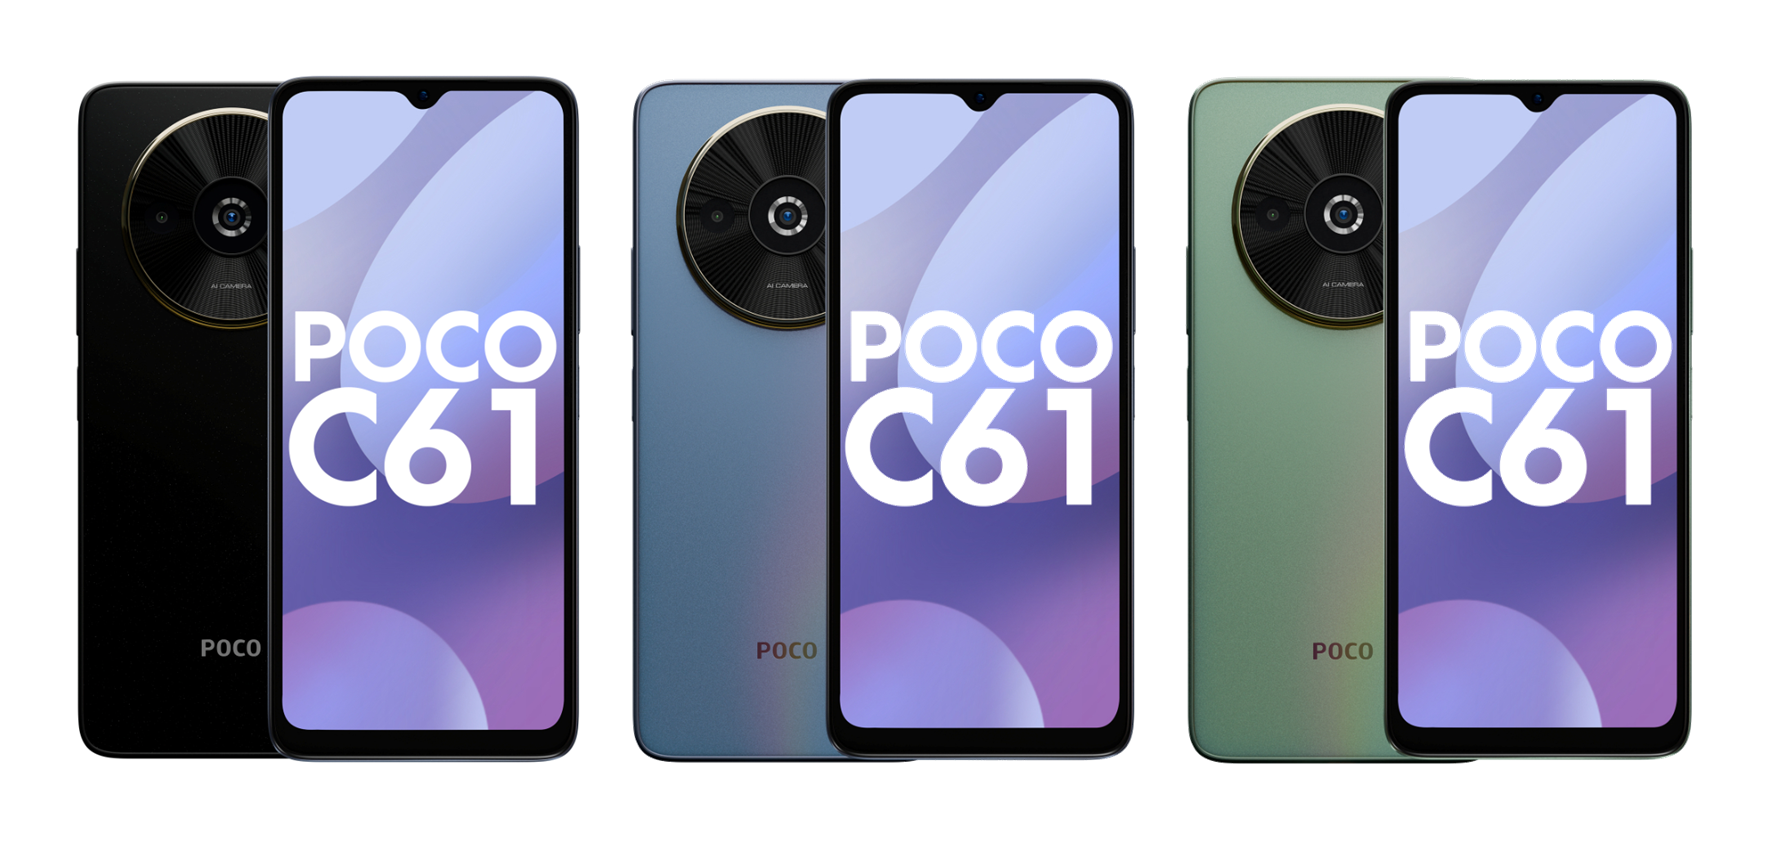 90Hz LCD-skärm, MediaTek Helio G36-chip och dubbelkamera: bilder och detaljer om POCO C61-smarttelefonen har dykt upp online